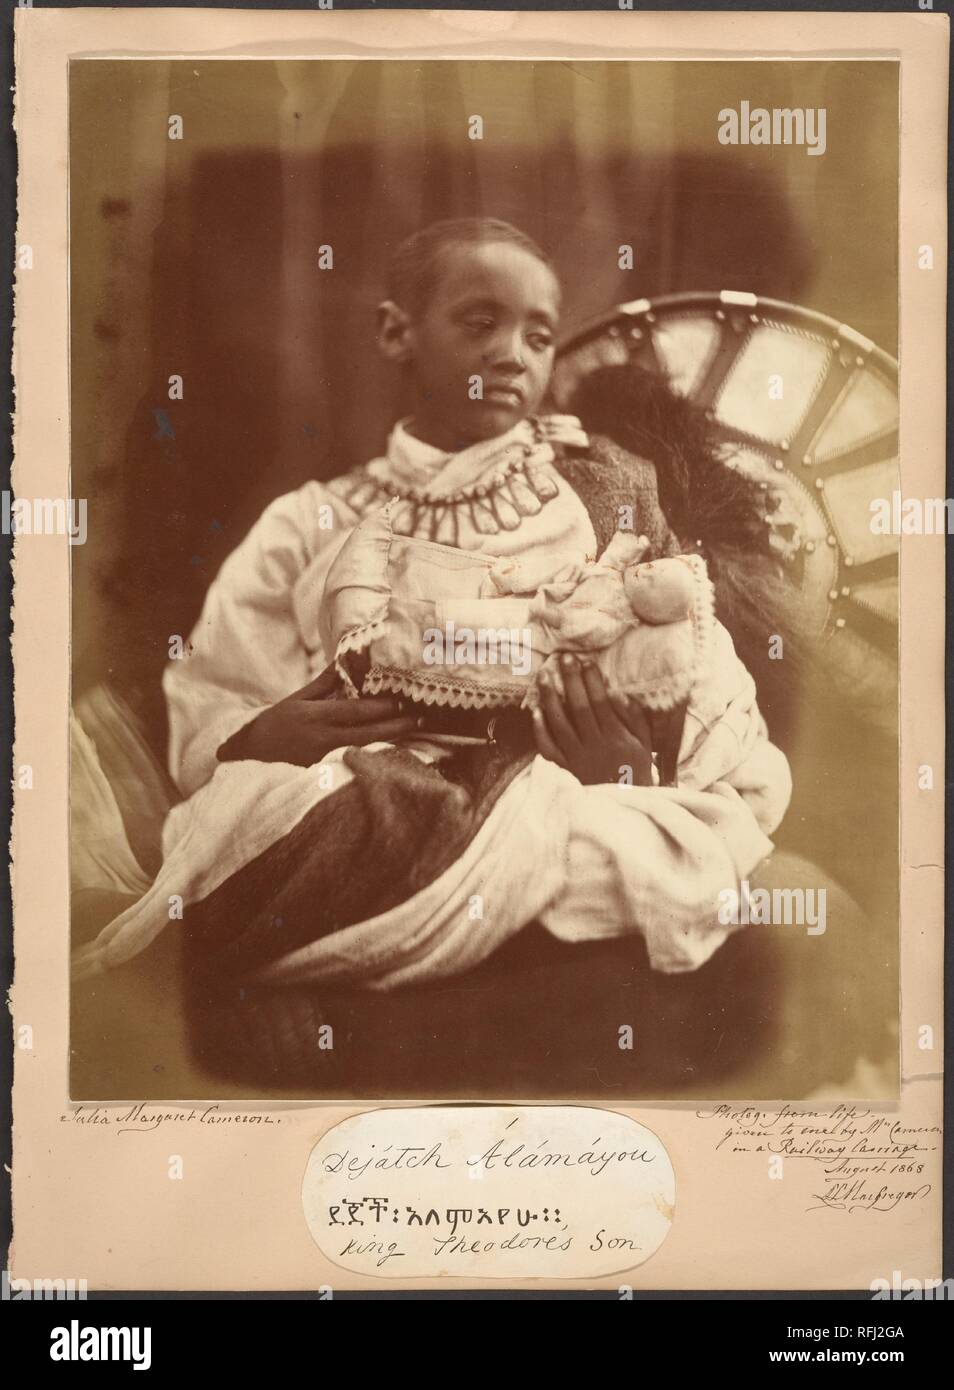 Déjatch Alámayou, re Théodore di nostro figlio. Artista: Julia Margaret Cameron (britannico nato (India), Calcutta 1815-1879 Kalutara, Ceylon). Dimensioni: Immagine: 29,2 x 23,3 cm (11 1/2 x 9 3/16 in.). Data: Luglio 1868. Déjatch Alámayou fu preso in Inghilterra dopo la sconfitta britannica degli Etiopi nella battaglia di Magdala e il suicidio di suo padre, Tewodros (Theodore) II, imperatore di Etiopia, in aprile 1868. La regina Victoria ha preso un interesse in Alámayou e vide la sua istruzione e protezione, ponendolo nella cura del capitano Tristram Speedy, chi, come Cameron, aveva una casa sull'Isola di Wight. Speedy b Foto Stock